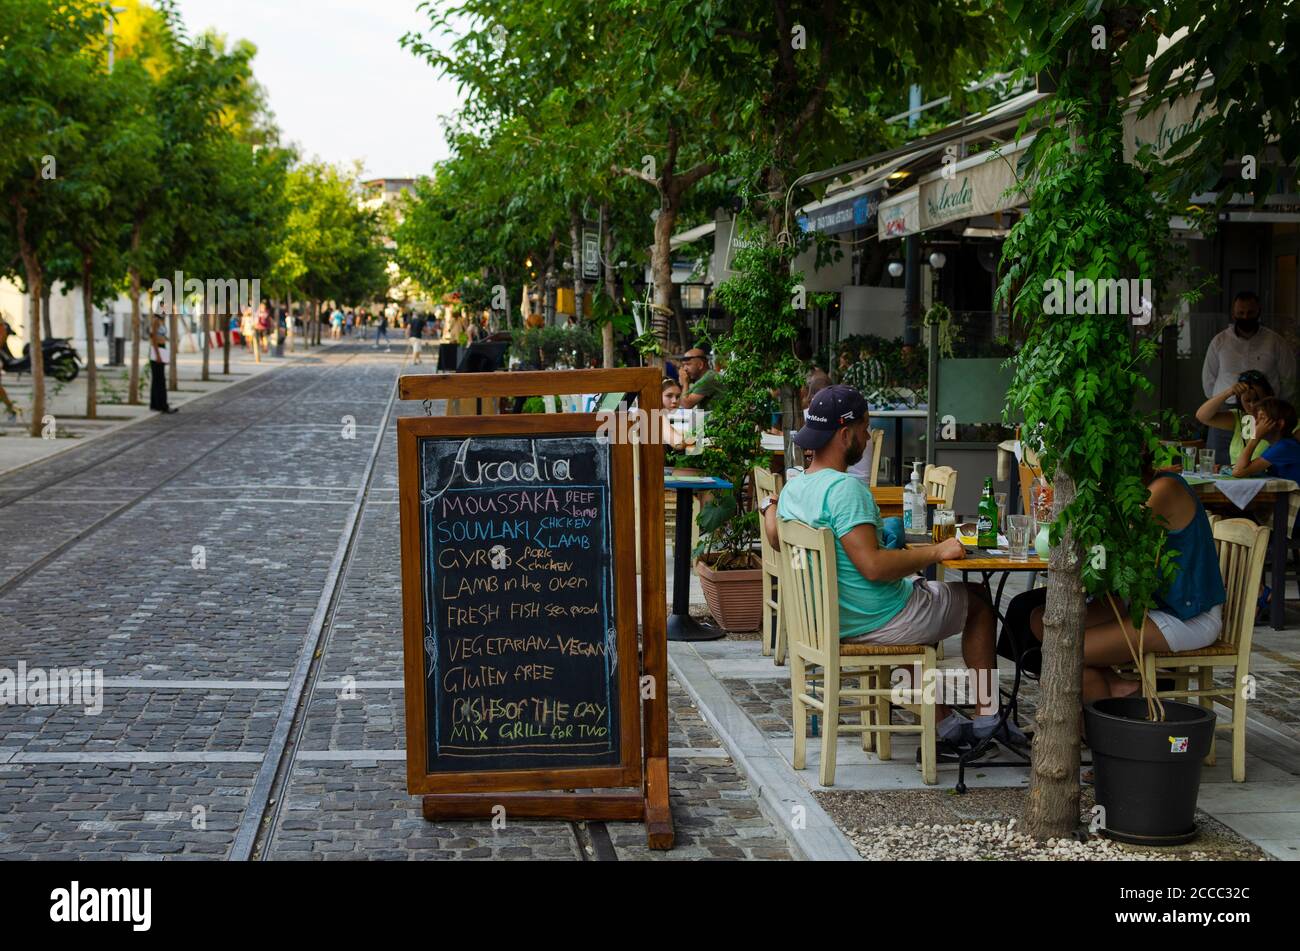 Menschen in Restaurants im Akropoli-Viertel der Innenstadt von Athen Griechenland - Foto: Geopix/Alamy Stock Photo Stockfoto